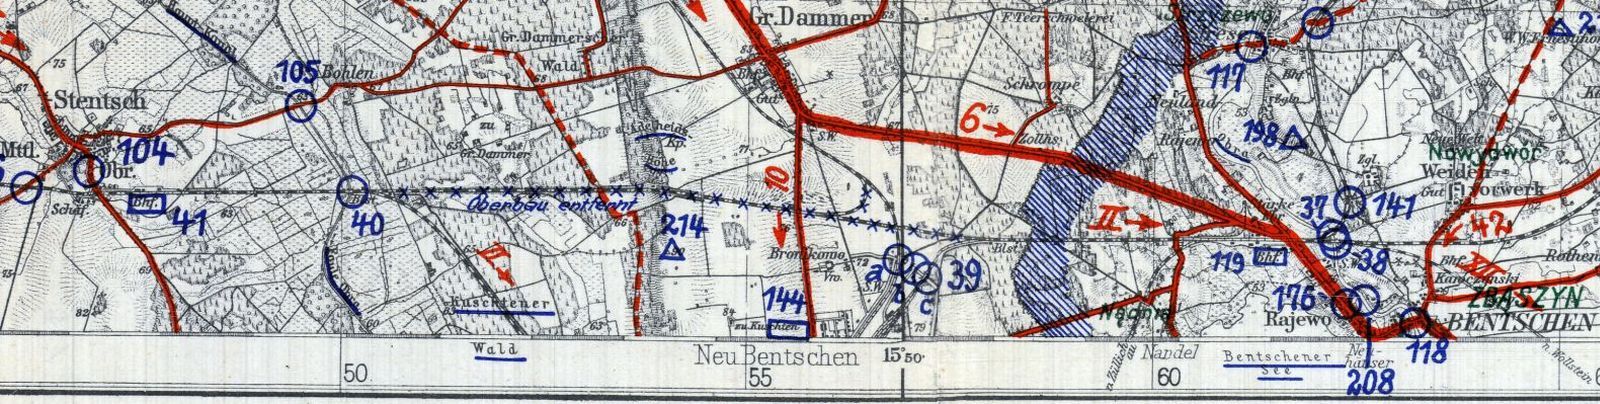 Sytuacja z 1933 roku. Zaznaczone niebieskimi "krzyżykami" odcinki torów, które w 1930 roku straciły swoją rolę i wstrzymano na nich ruch pociągów już do końca. W miejsce tego uruchomiono nowe połączenie utworzone w 1930 roku, w chwili oddania dworca osobowego w Zbąszynku 14.08.1930 r.